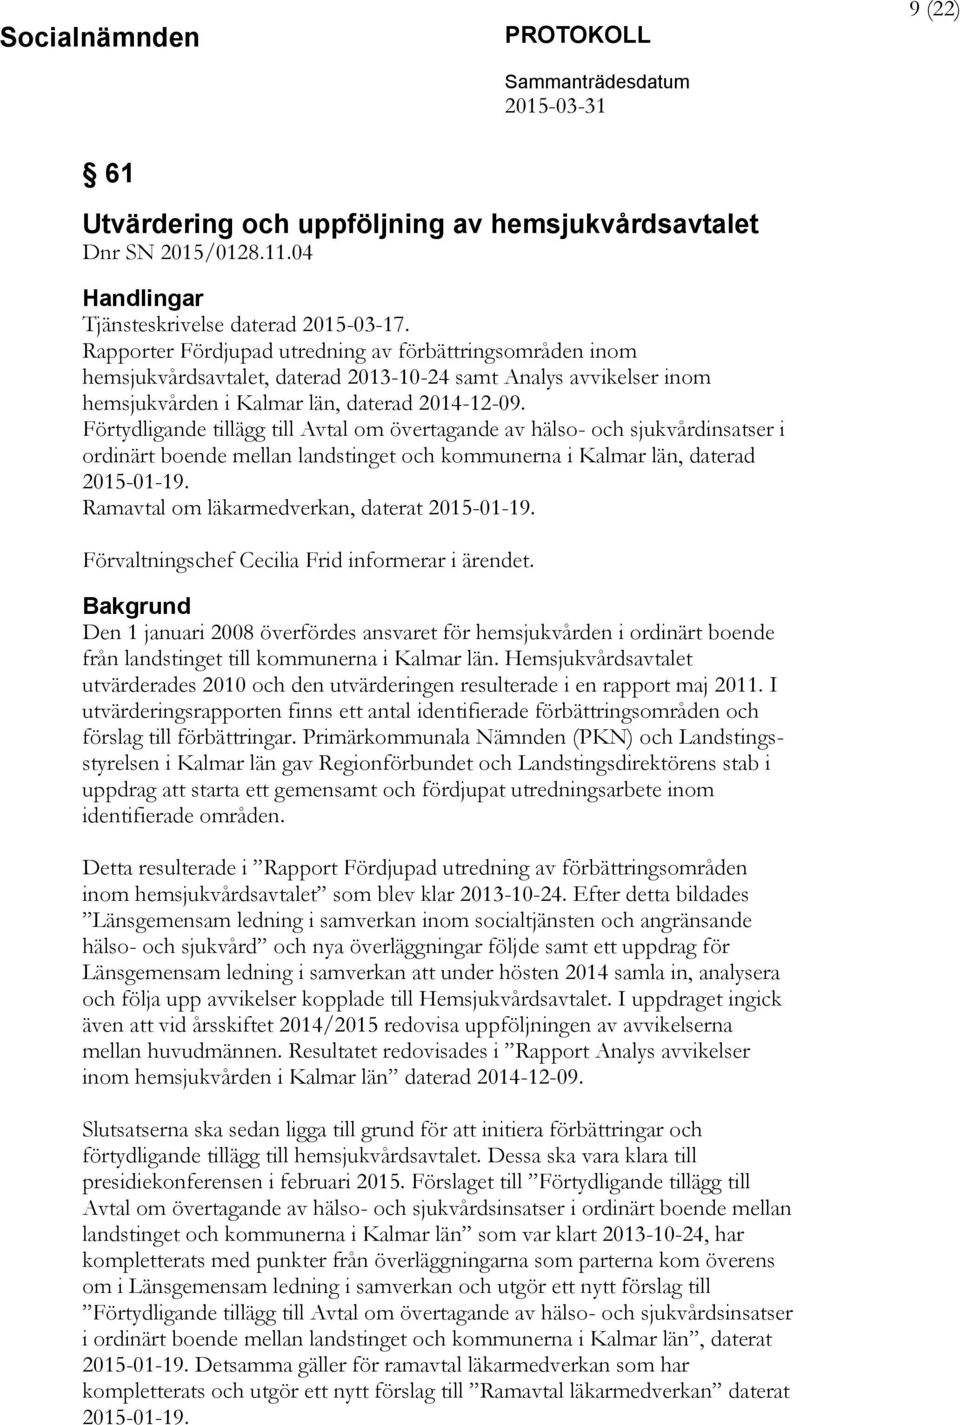 Förtydligande tillägg till Avtal om övertagande av hälso- och sjukvårdinsatser i ordinärt boende mellan landstinget och kommunerna i Kalmar län, daterad 2015-01-19.